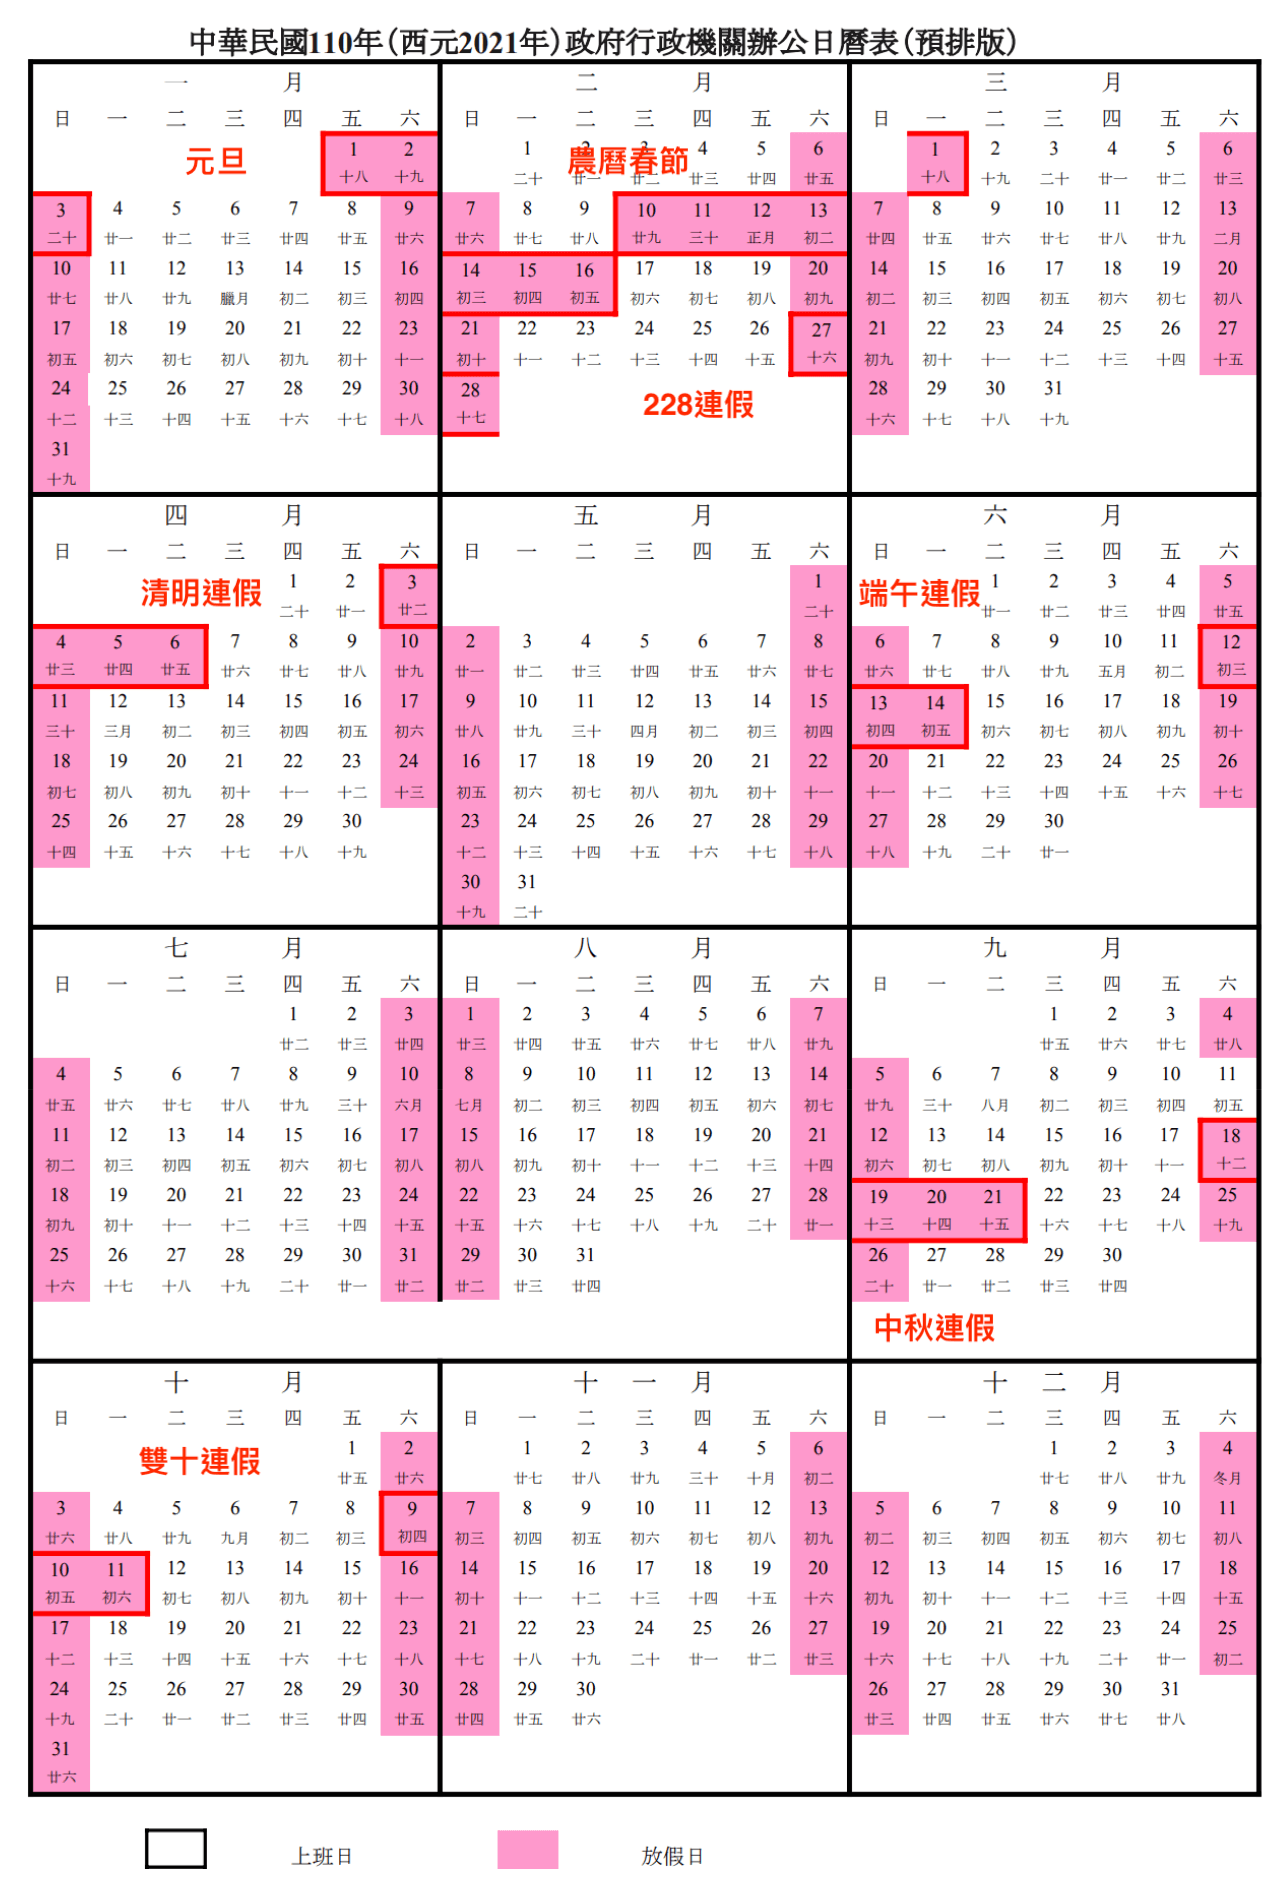 2021行事曆, 人事行政局, 110年行事曆